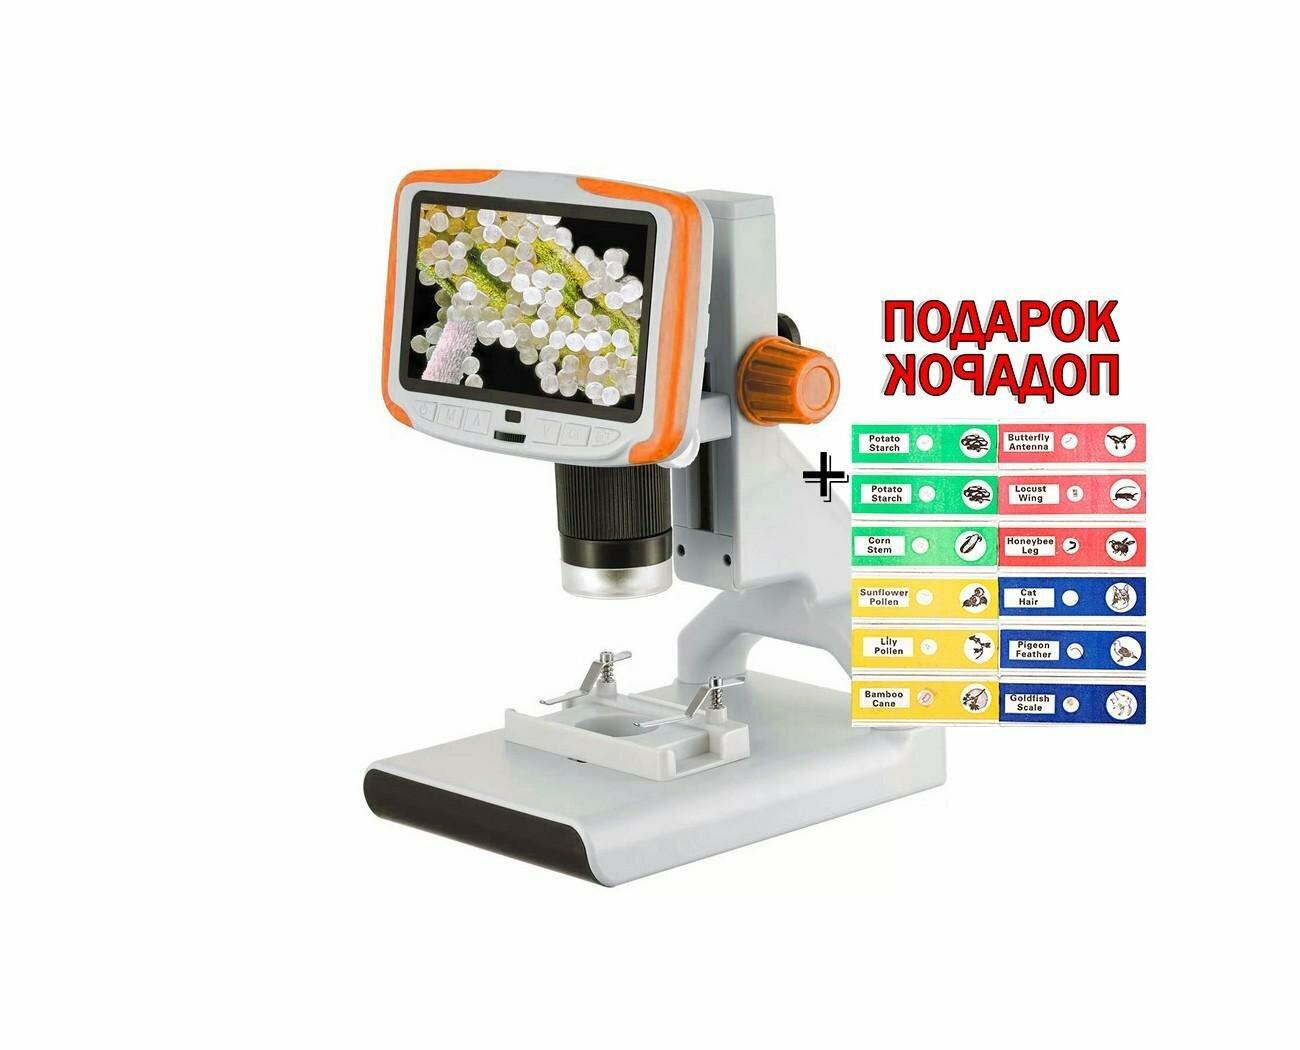 Микроскоп для детей МикроМир А205 (12MP) (W3551RU) (х1000 - 1920x1080 / 12mp) с экраном и записью на SD детский микроскоп для увеличения